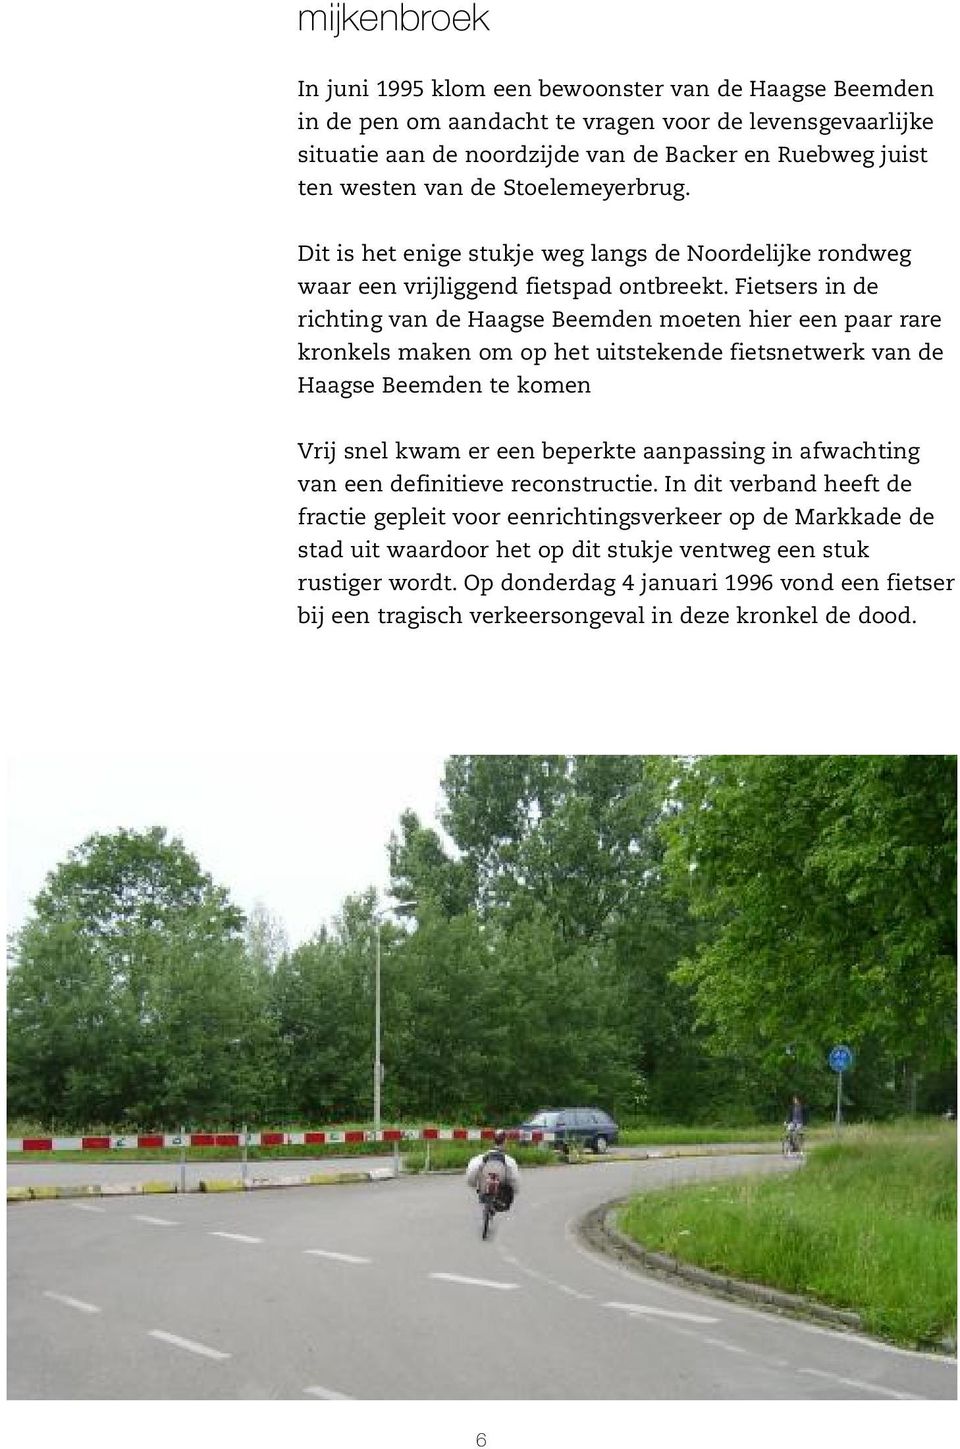 Fietsers in de richting van de Haagse Beemden moeten hier een paar rare kronkels maken om op het uitstekende fietsnetwerk van de Haagse Beemden te komen Vrij snel kwam er een beperkte aanpassing in